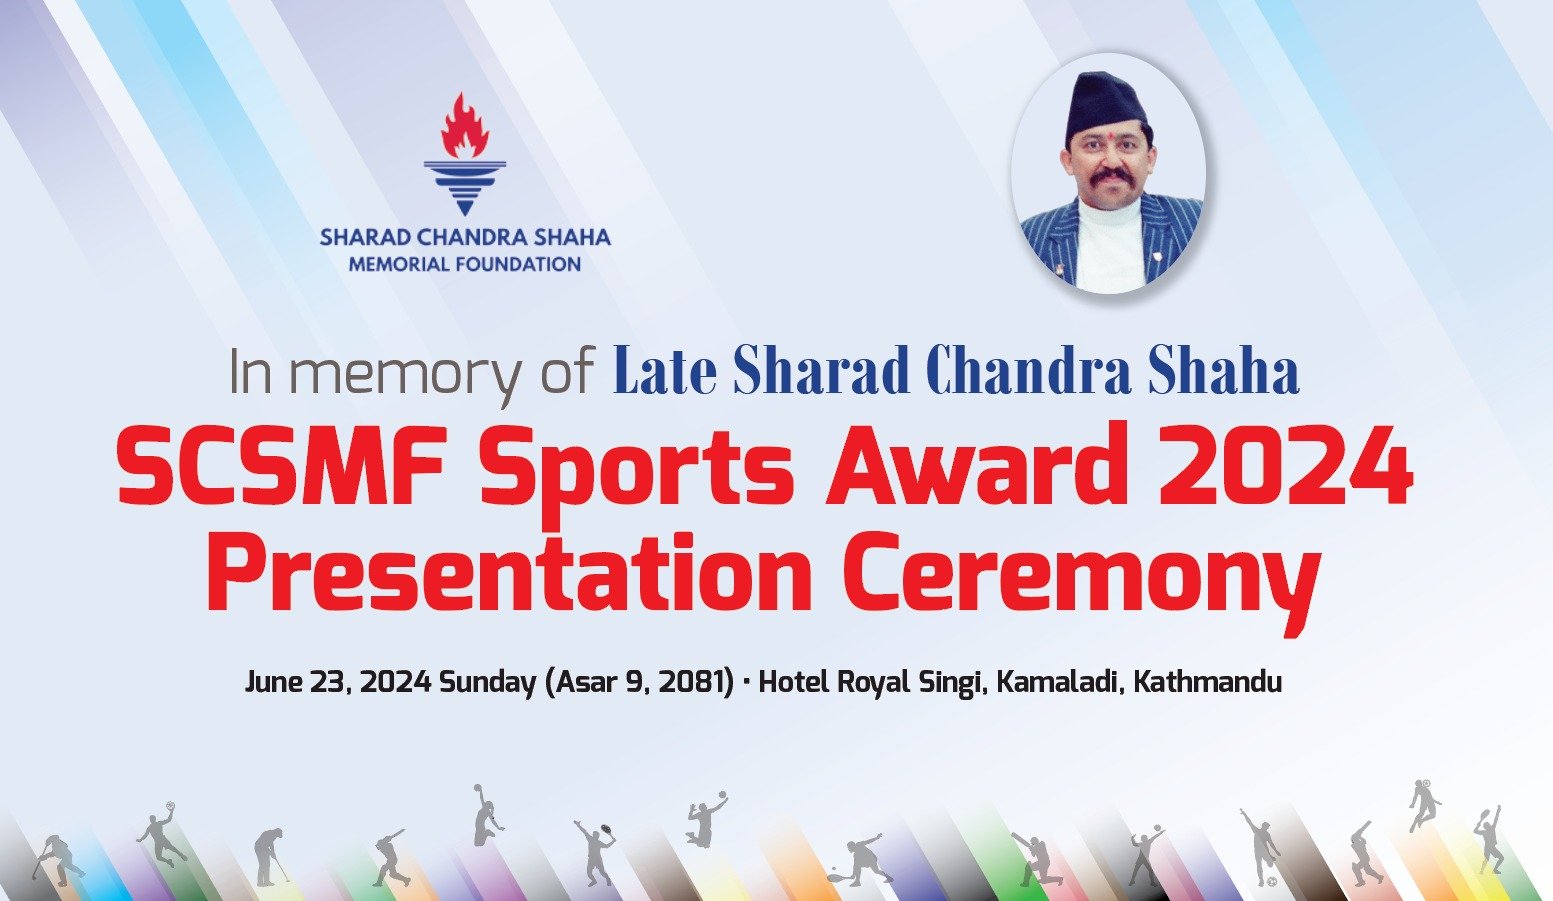 शरद चन्द्र शाहा मेमोरियल फाउन्डेसन द्वारा  ''SCSMF Sports Award 2024 